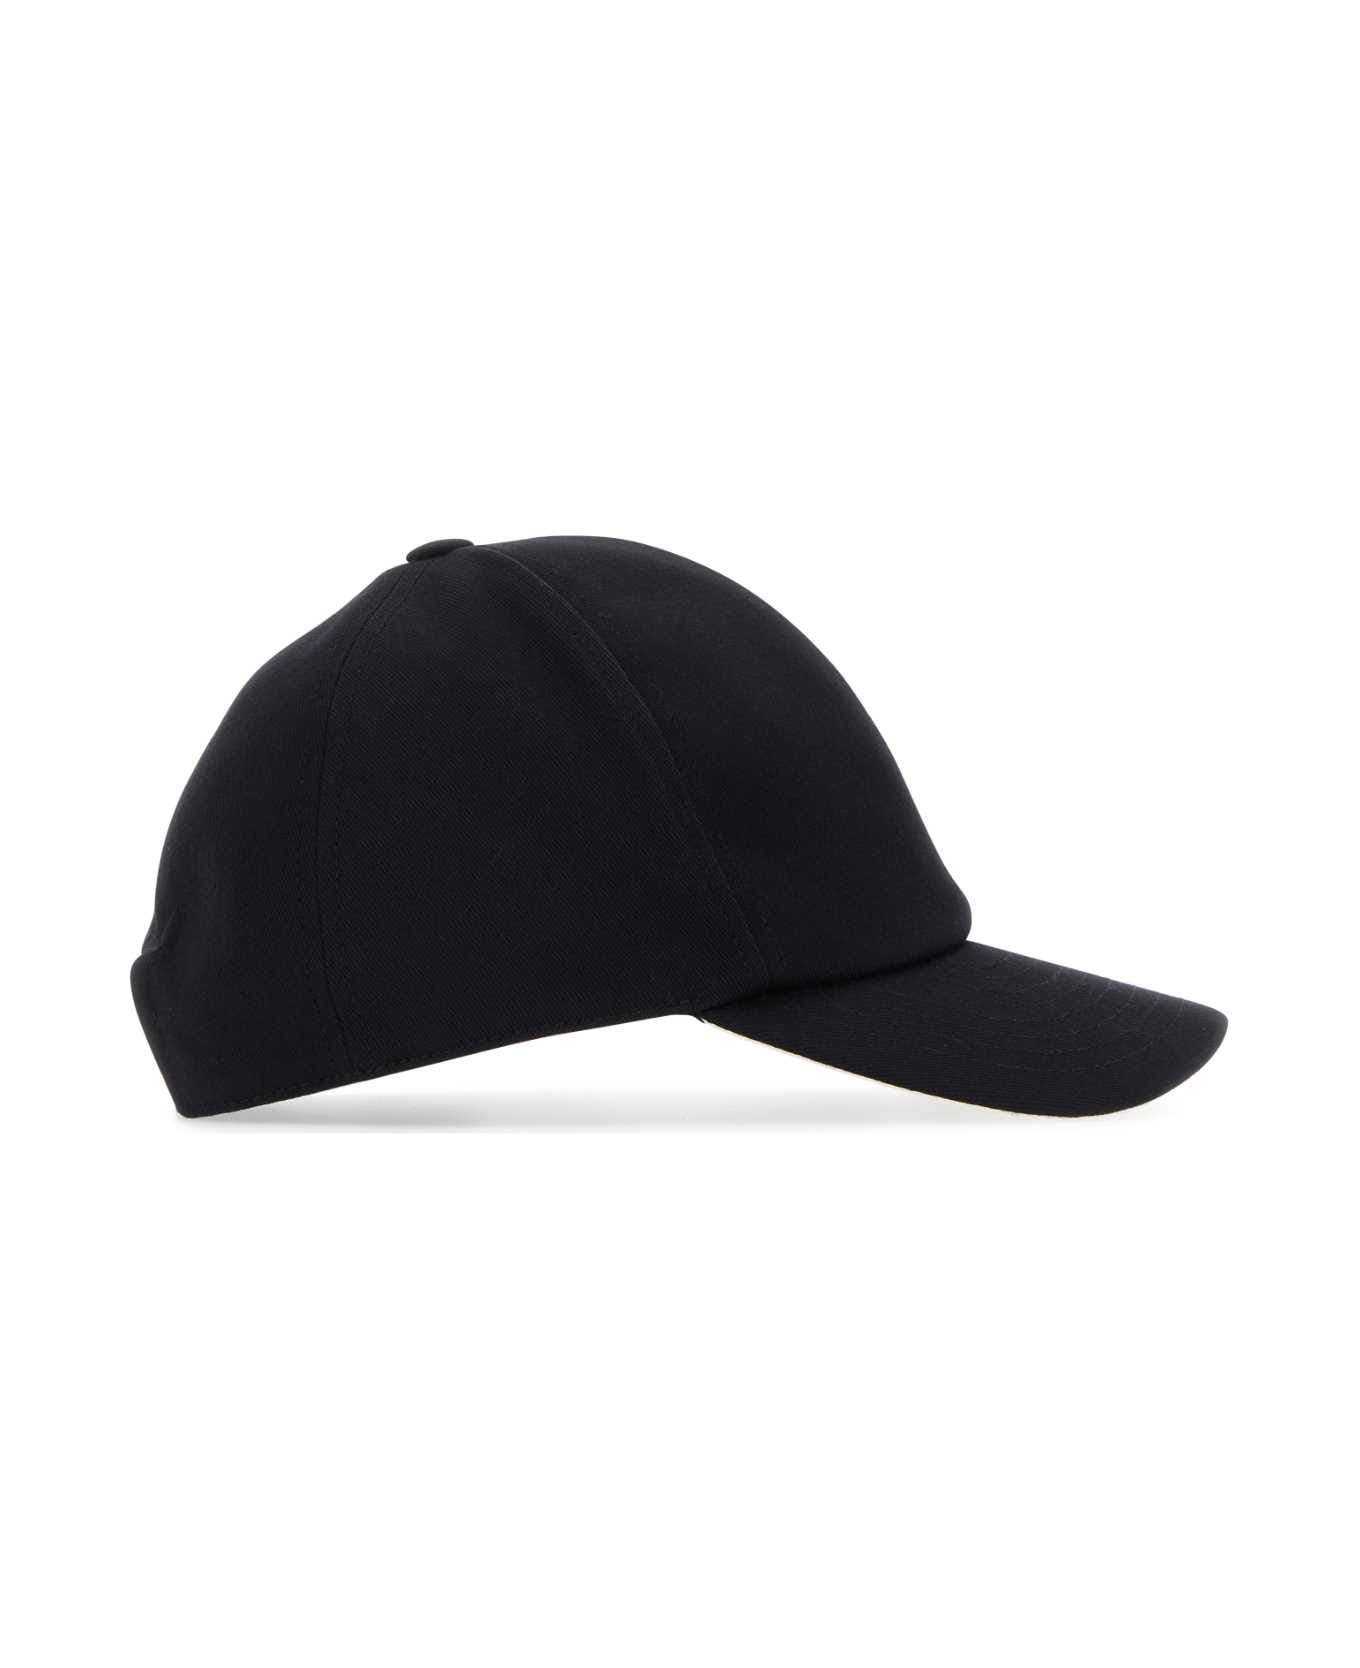 Courrèges Black Cotton Baseball Cap - Black